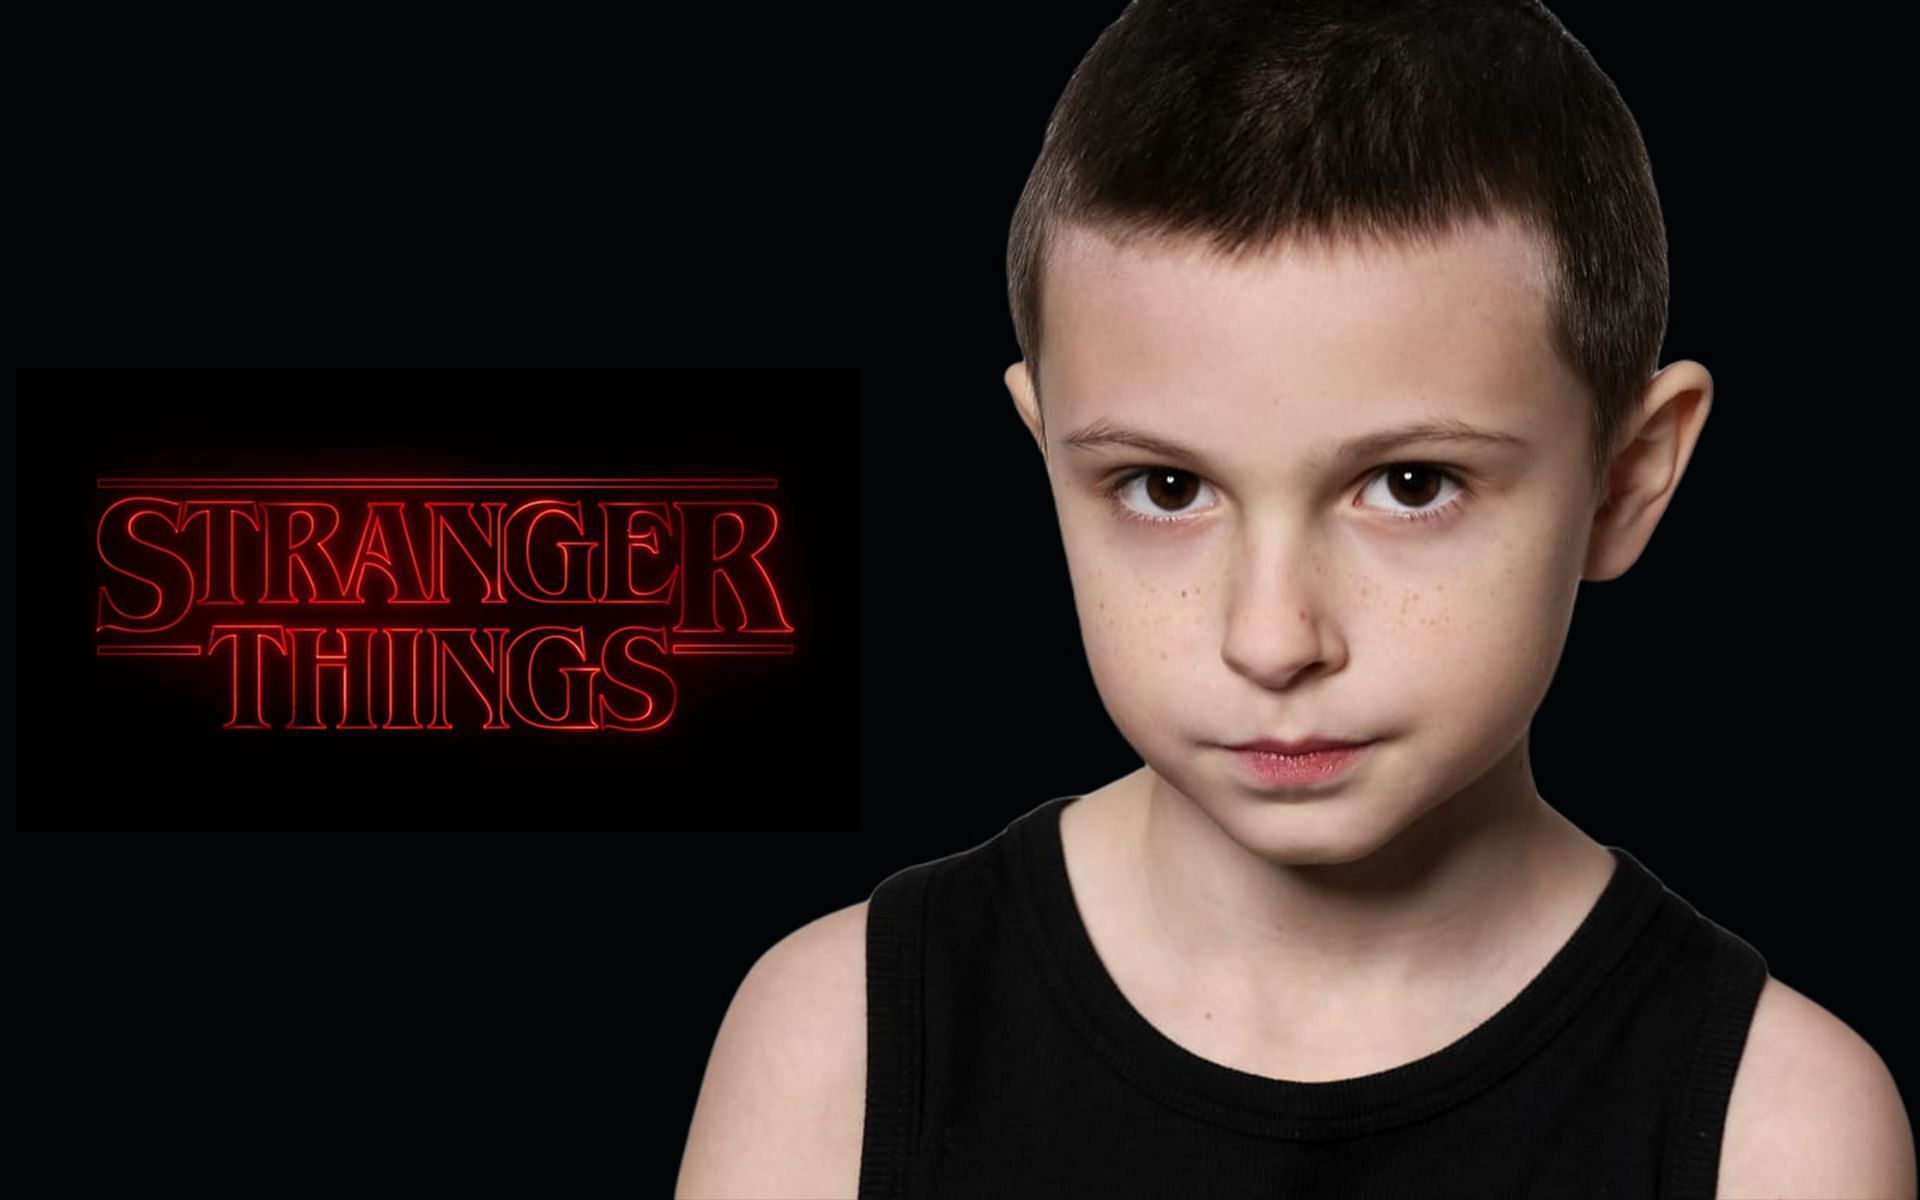 Strangerer things: what's next for the Netflix smash?, Stranger Things